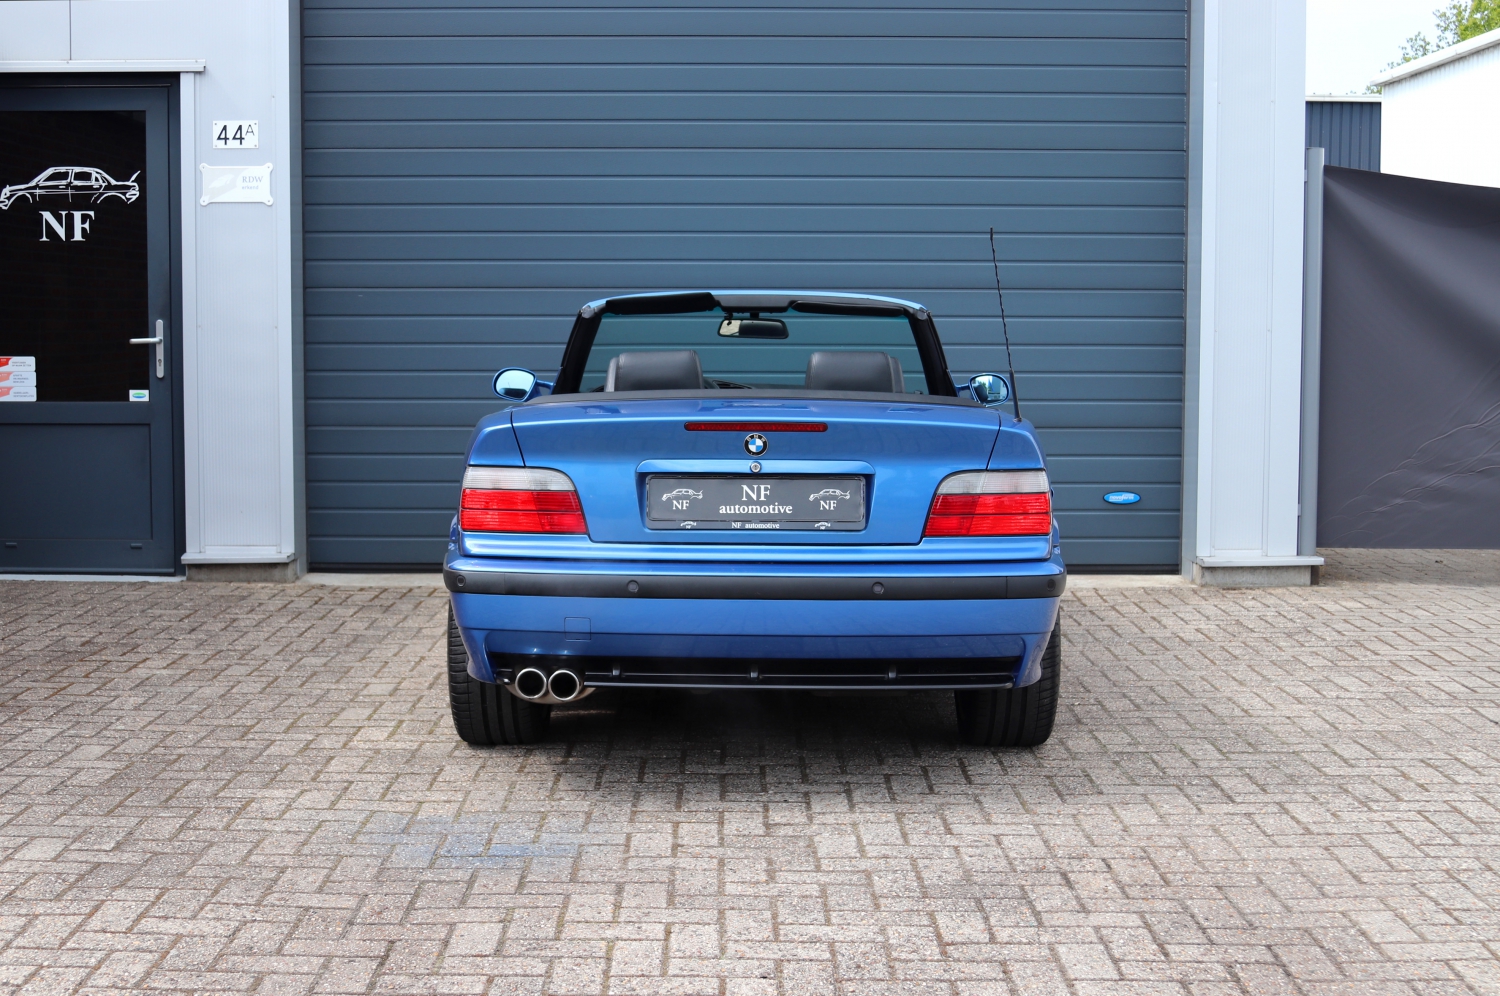 BMW-M3-Cabriolet-3.2-E36-1997-SBNJ95-006.JPG